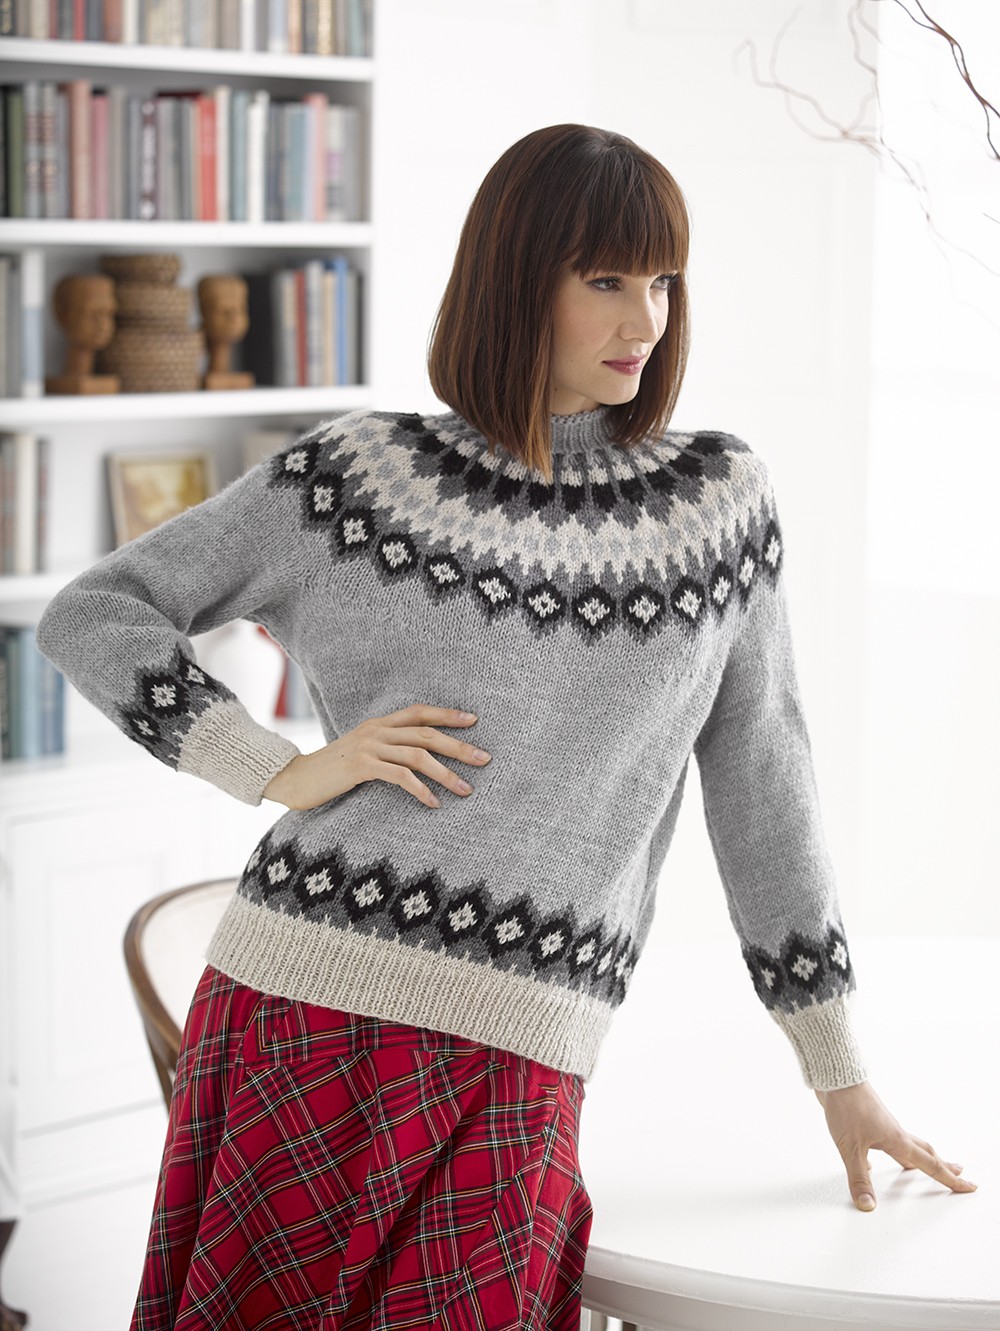 The Yoke Sweater Trend, in 13 Patterns